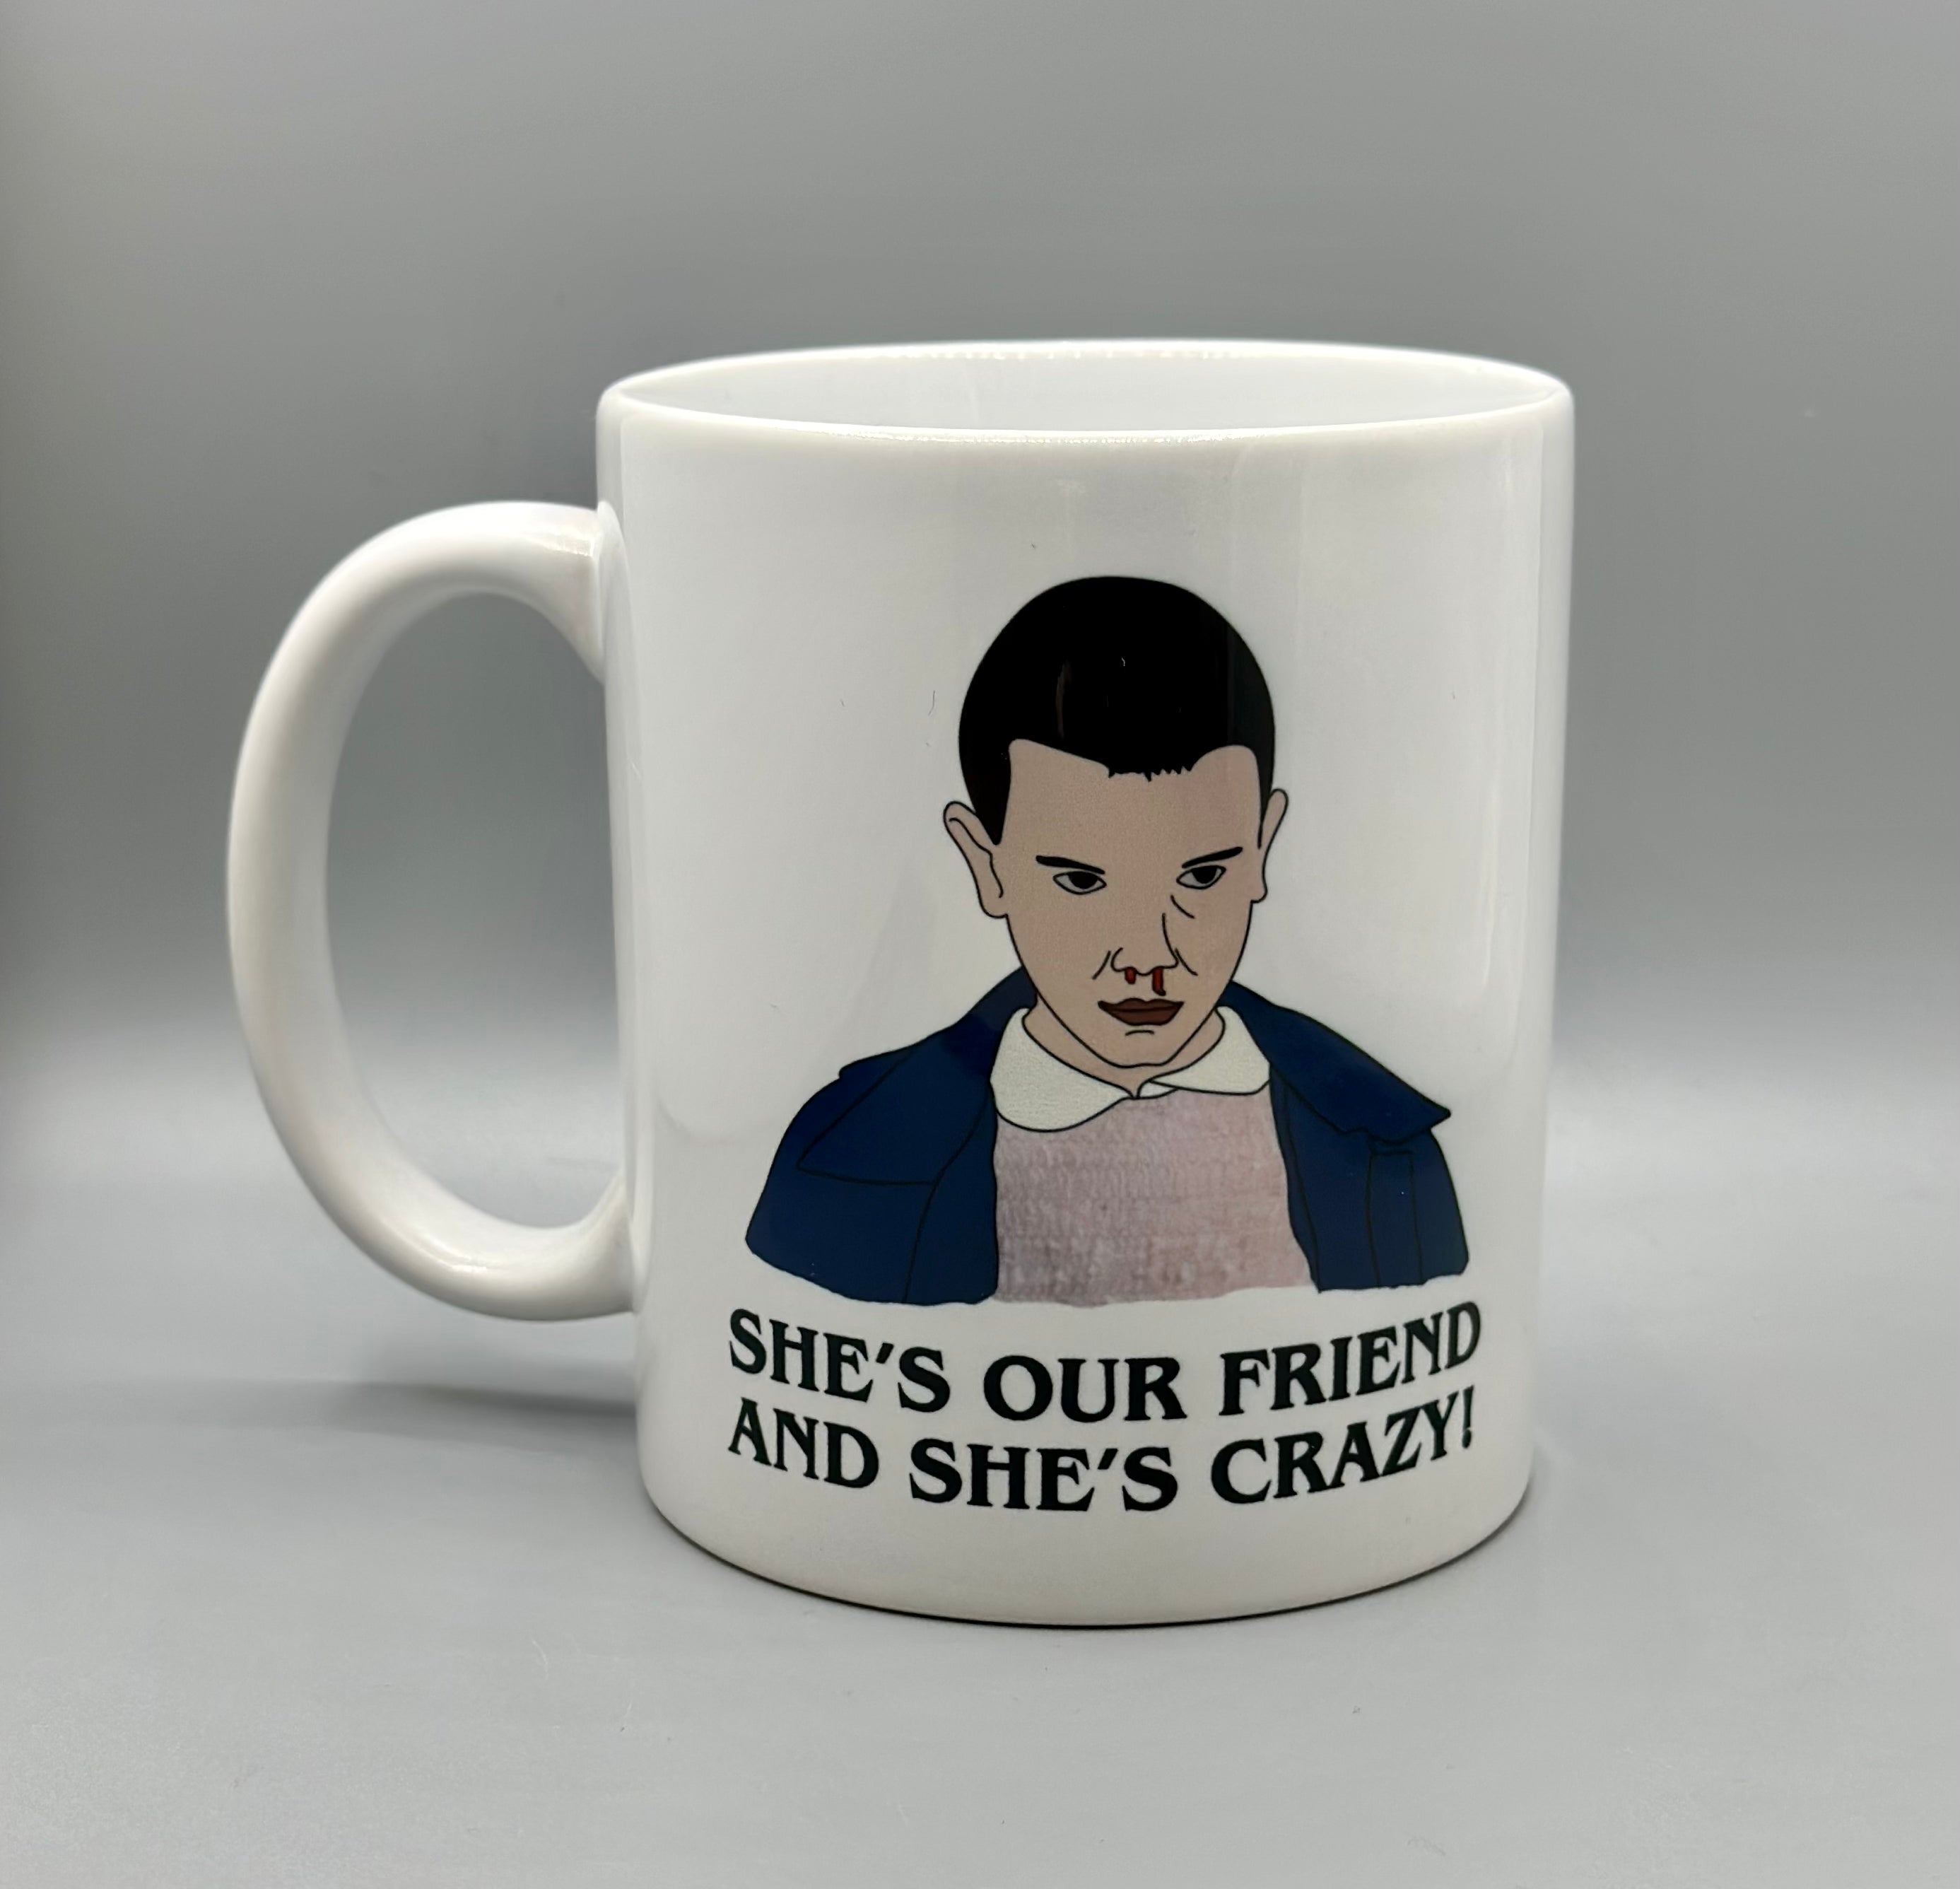 She's Our Friend and She's Crazy Ceramic Mug